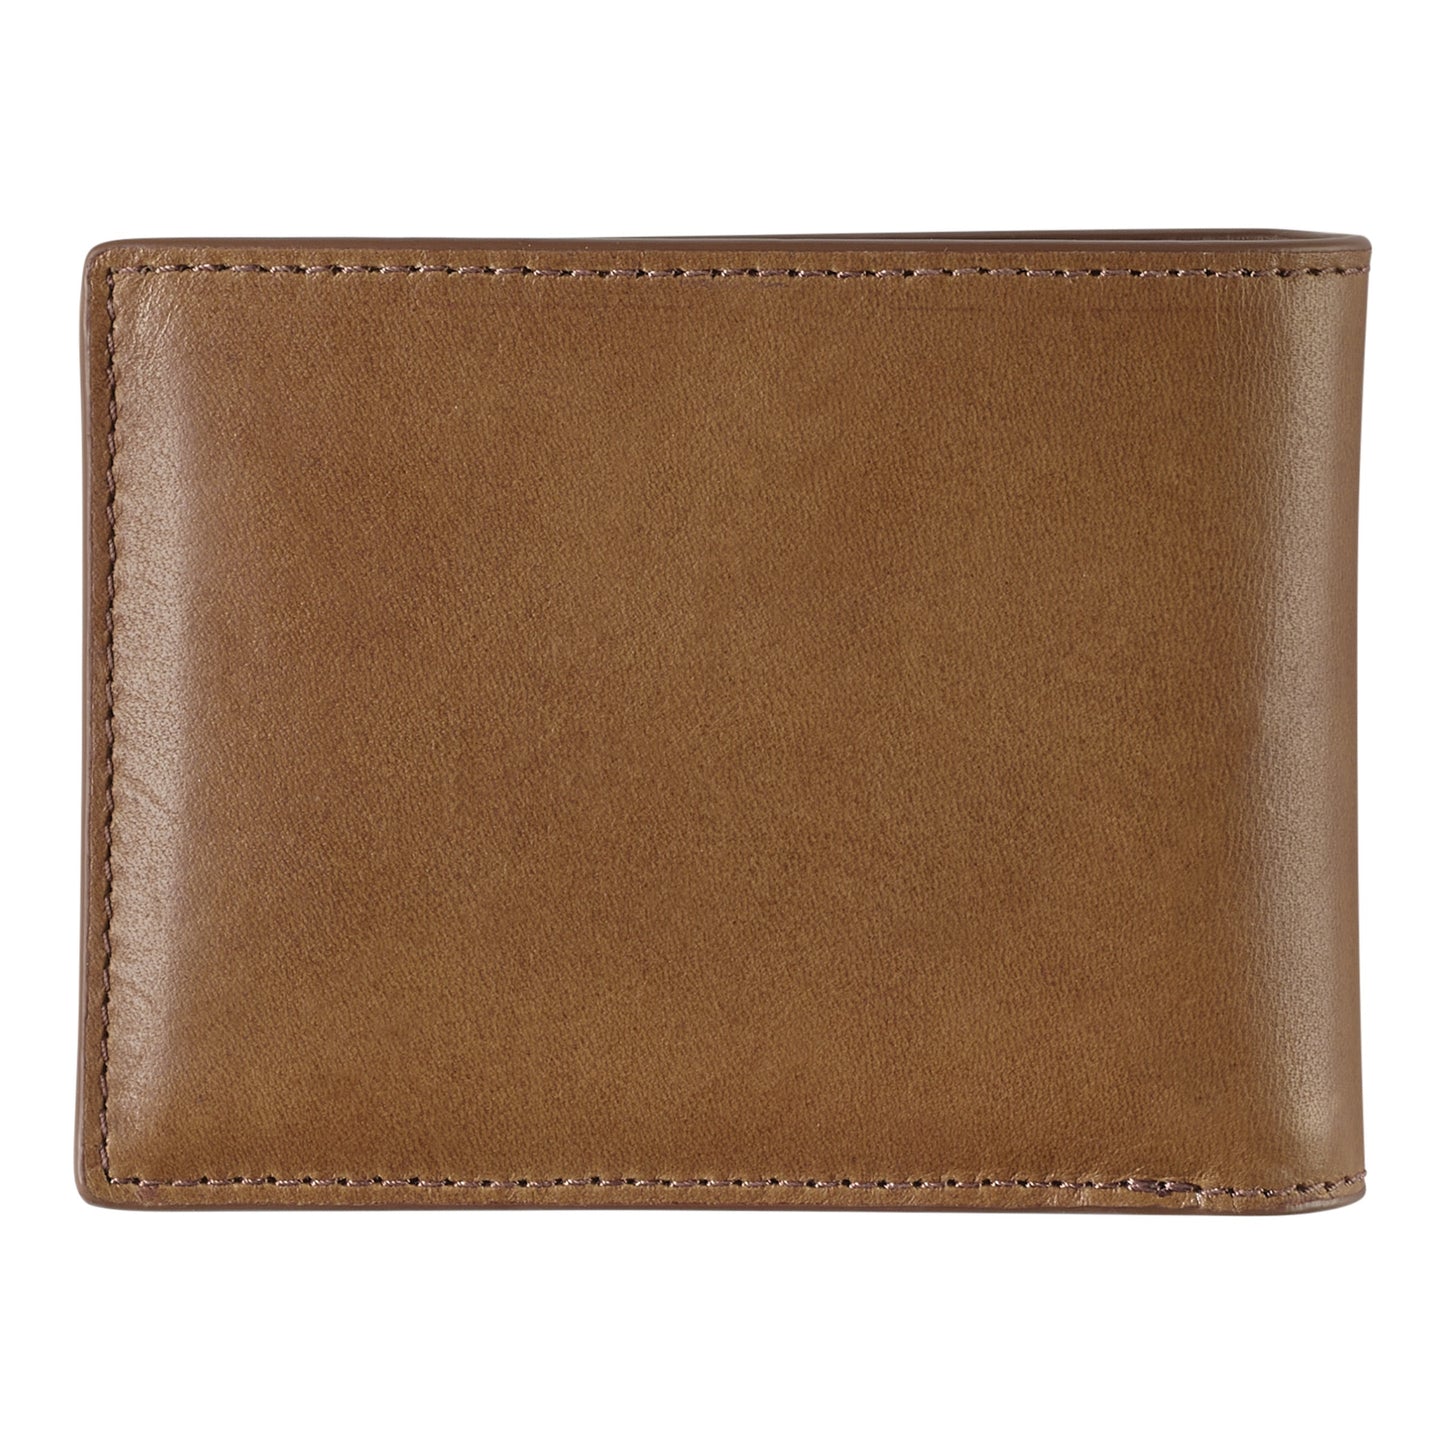 Johnston & Murphy Rhodes Billfold Wallet in Tan Full Grain Leather